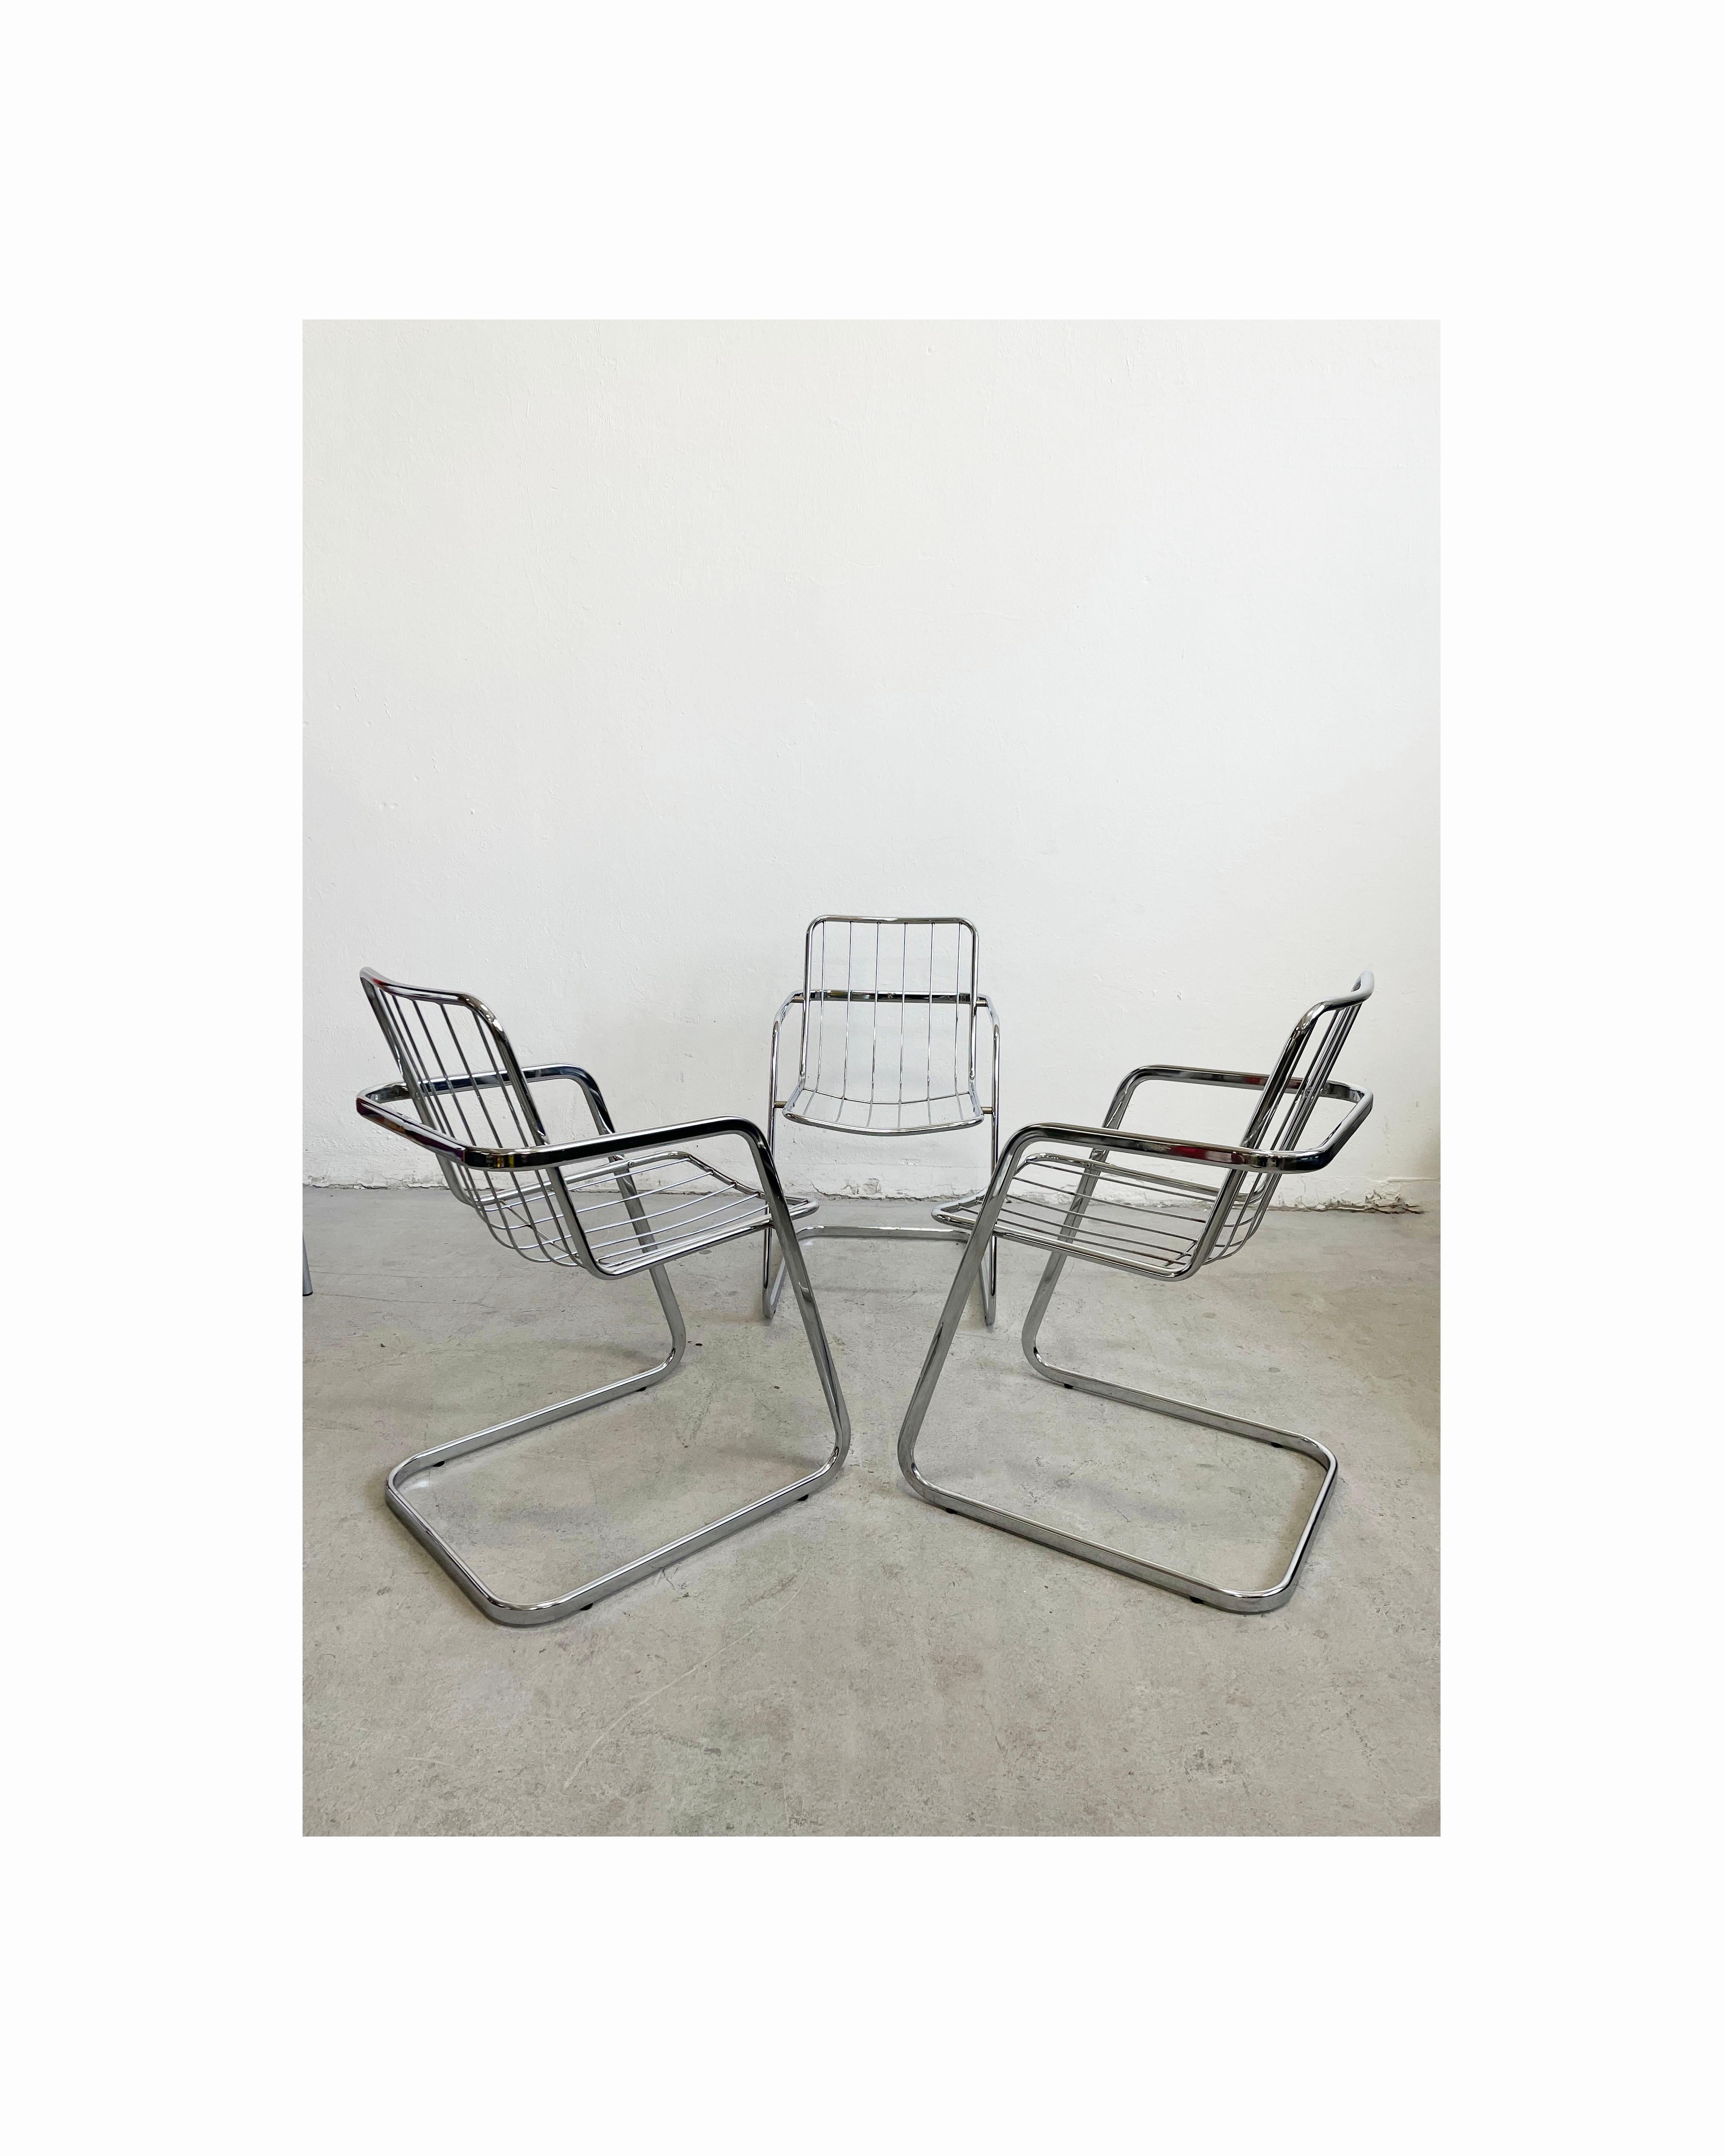 Ensemble de 3 chaises de salle à manger italiennes en chrome attribuées à Gastone Rinaldi, produites dans les années 1970 

Les chaises sont en chrome

La structure est saine et solide, les parties métalliques présentent de légères traces d'usure